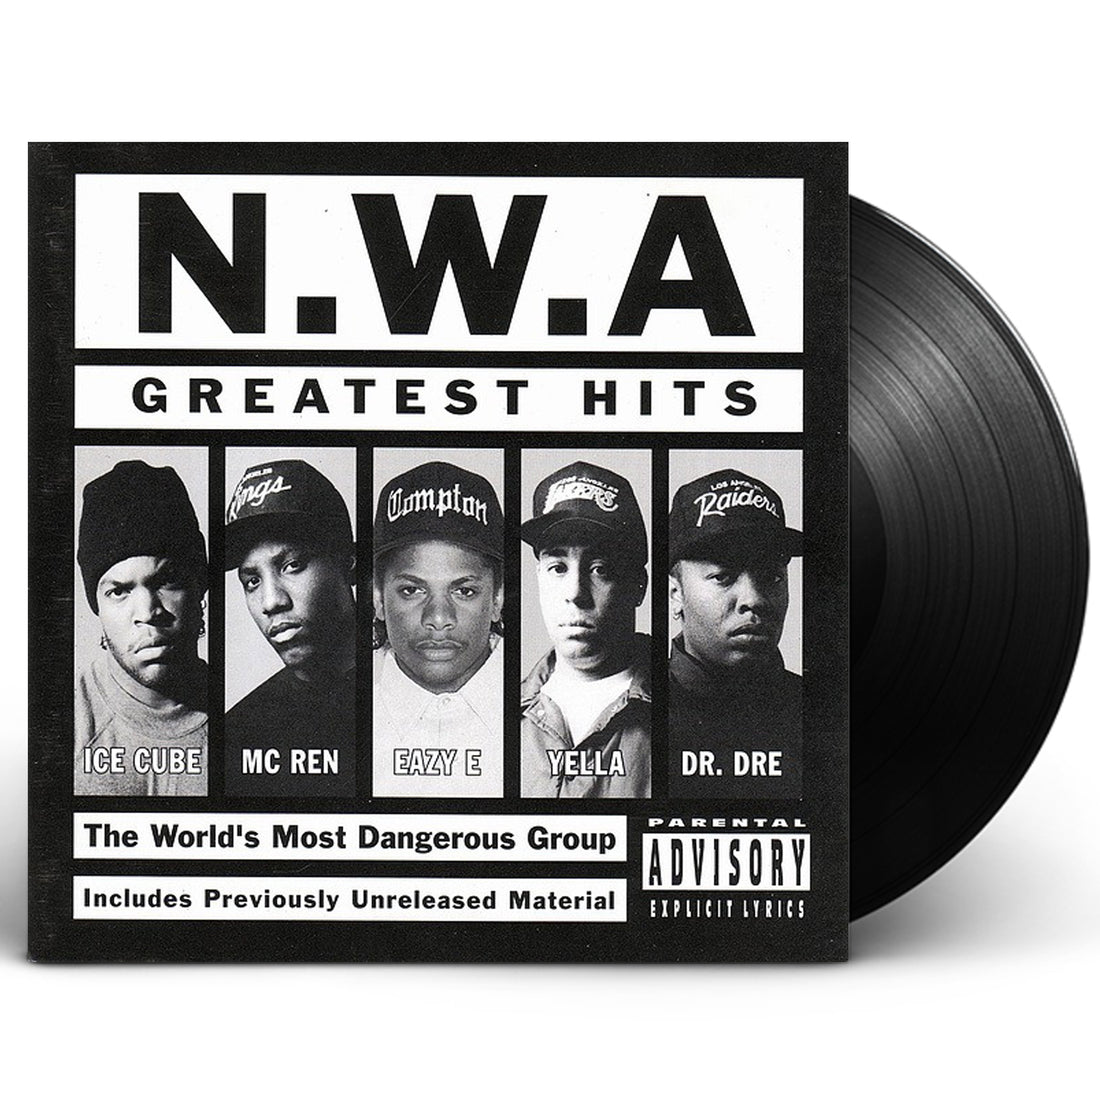 N.W.A. "N.W.A. Greatest Hits" 2xLP Vinyl